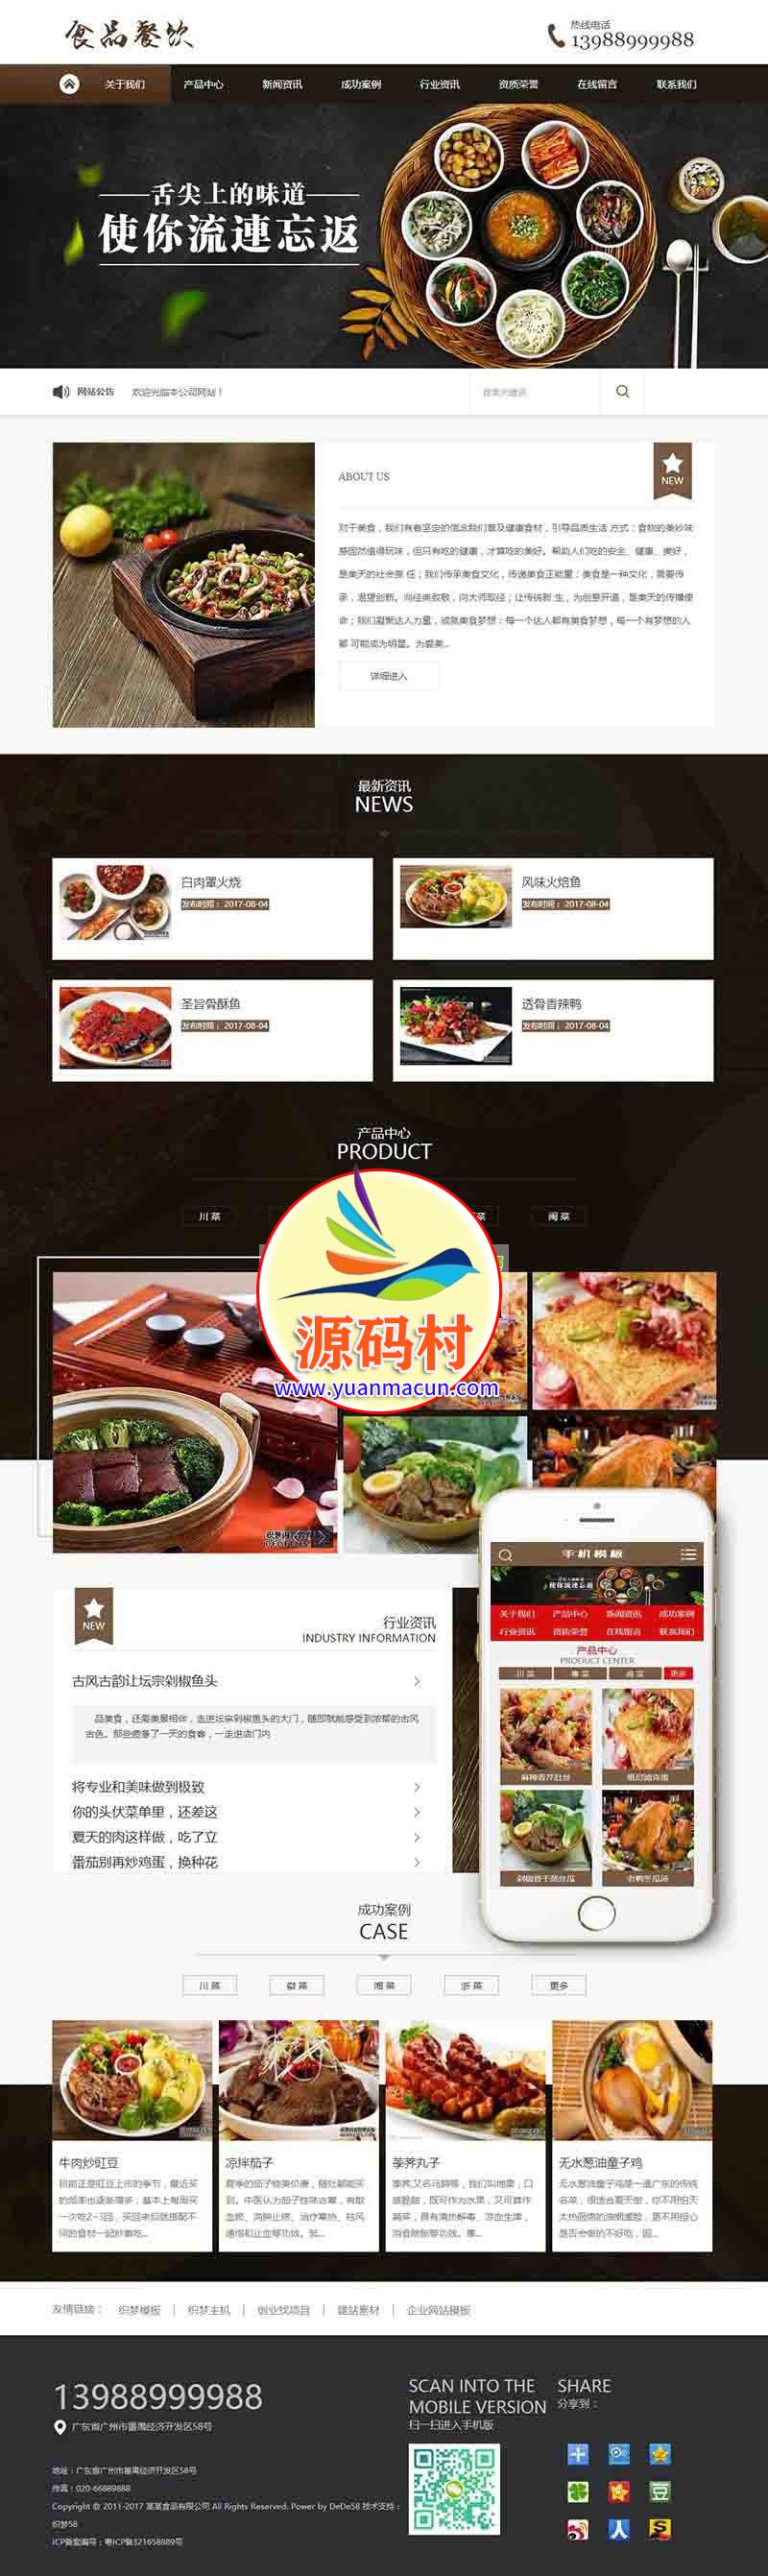 dedecms织梦健康食品餐饮美食类网站源码(带手机端) 美食展示整站源码下载